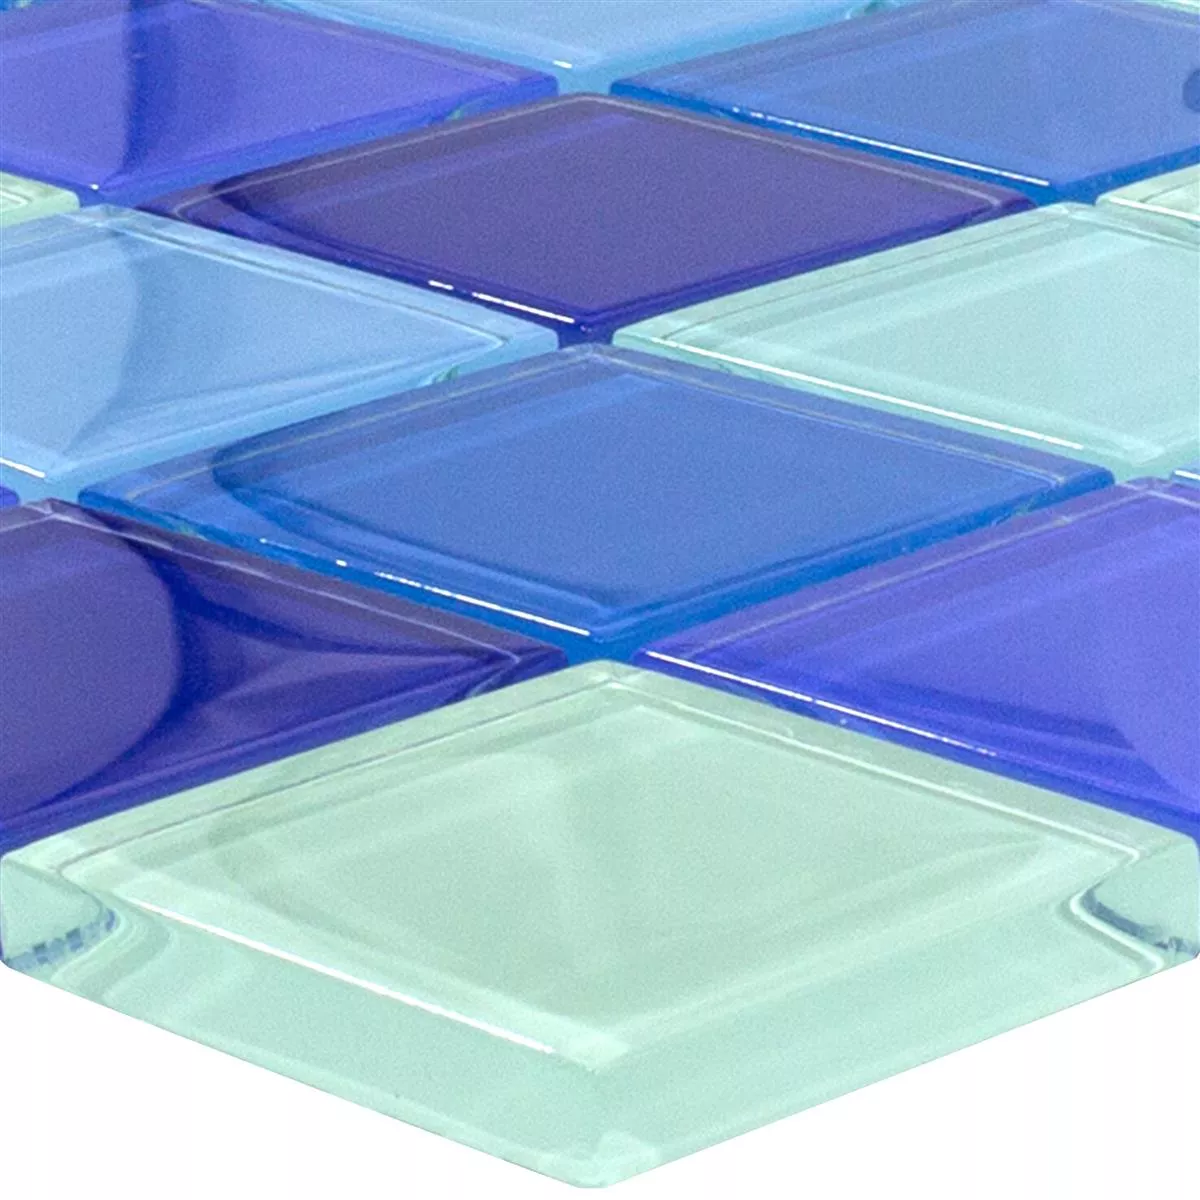 Muster von Glasmosaik Fliesen Glasgow Blau Mix